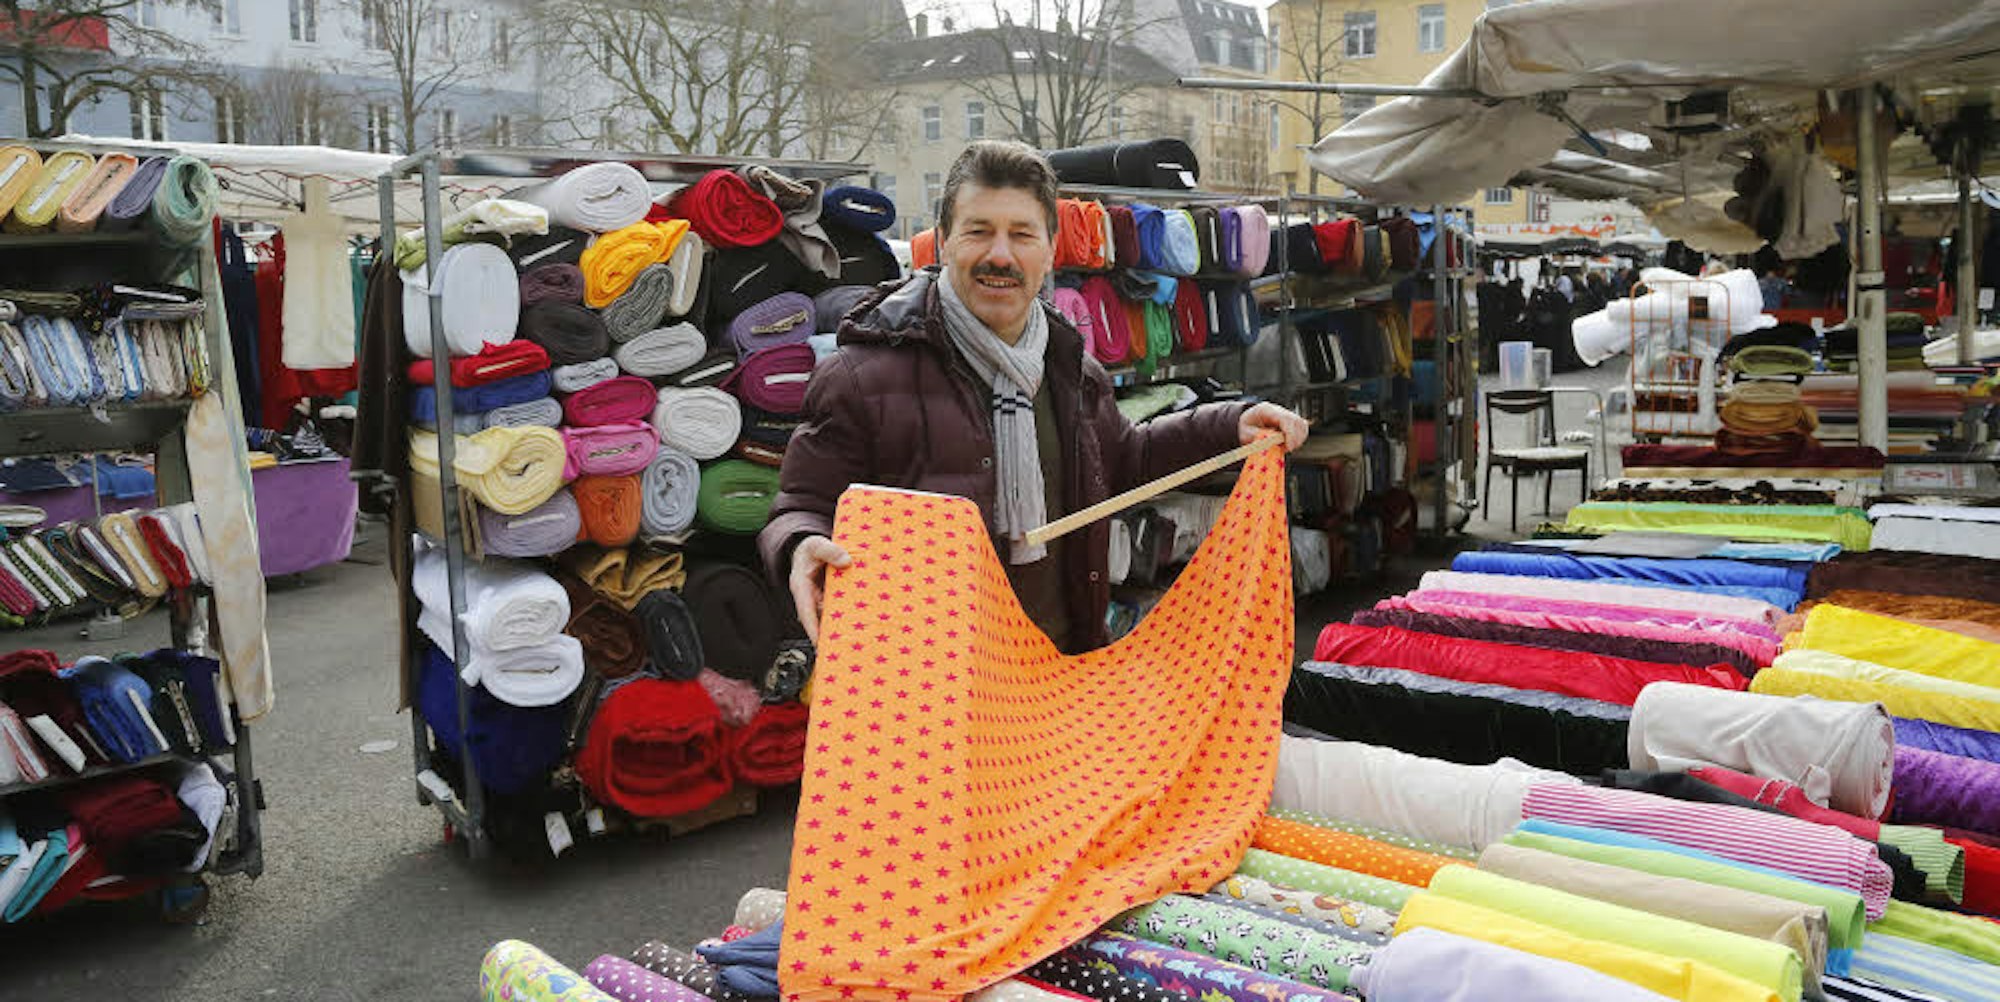 Mustafa Özcan verkauft Tücher auf dem Nippeser Wochenmarkt.